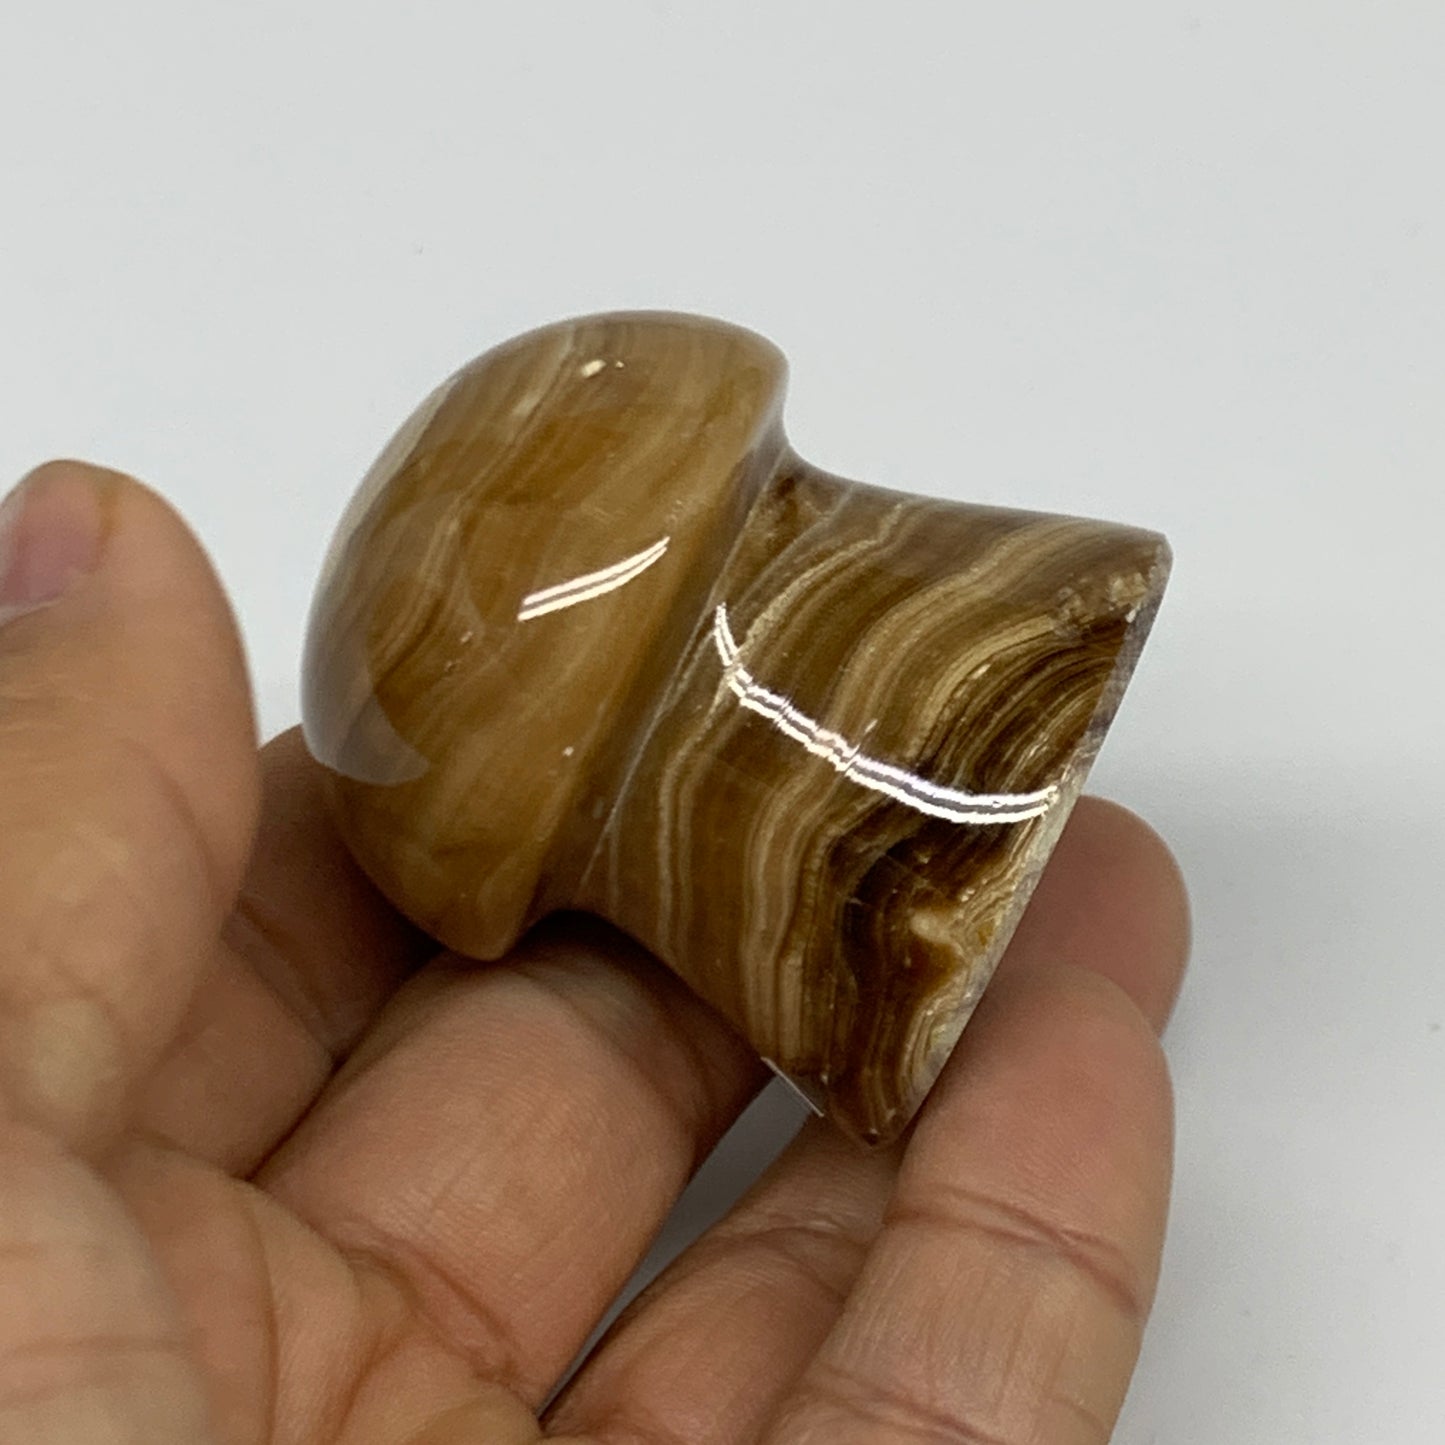 90.4g, 1.6x1.4", Chocolate Calcite Mushroom 2 Pieces bonded @Pakistan, B31697